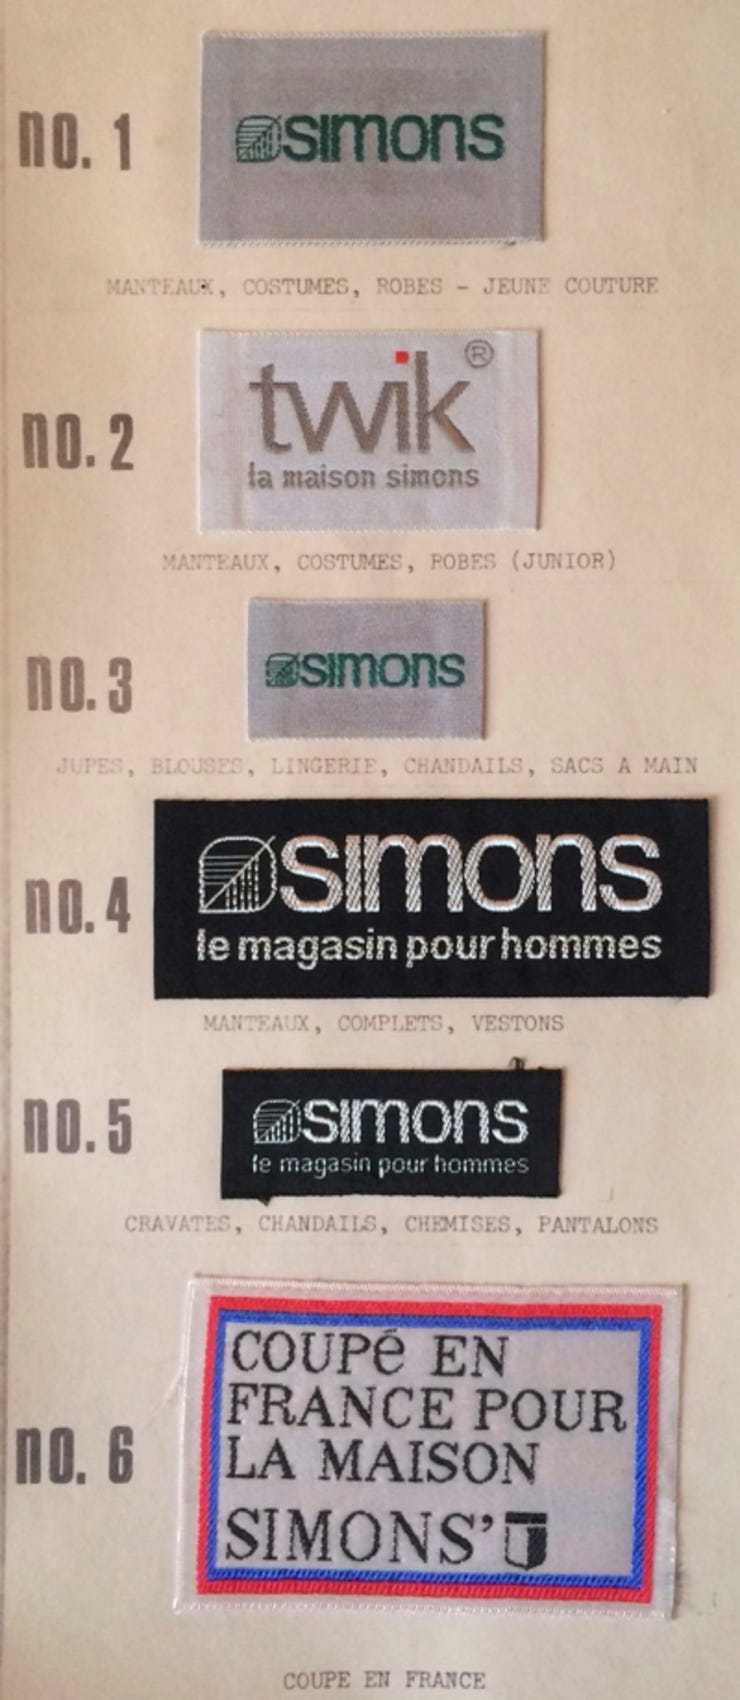 Image de Simons à travers le temps (source: Claude A. Simard)